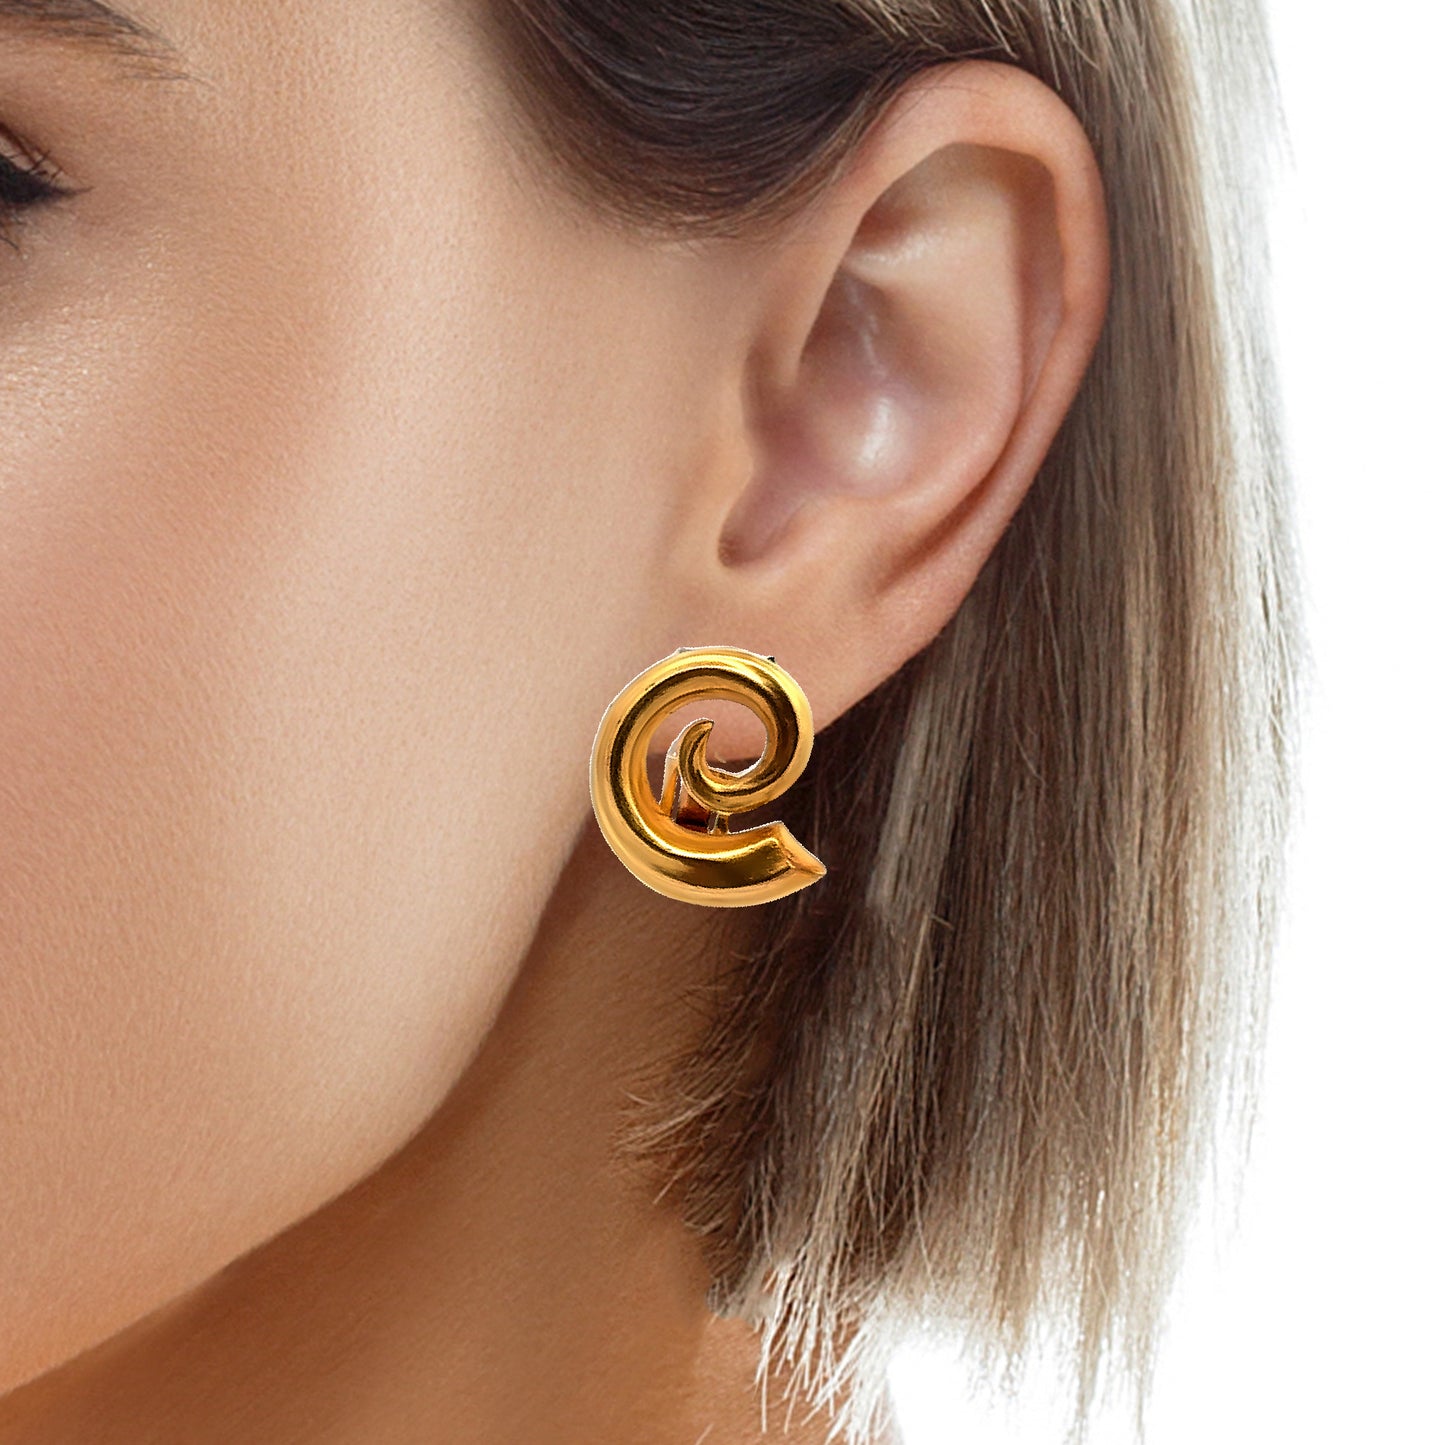 18K Golden Spiral Clip-On Earrings